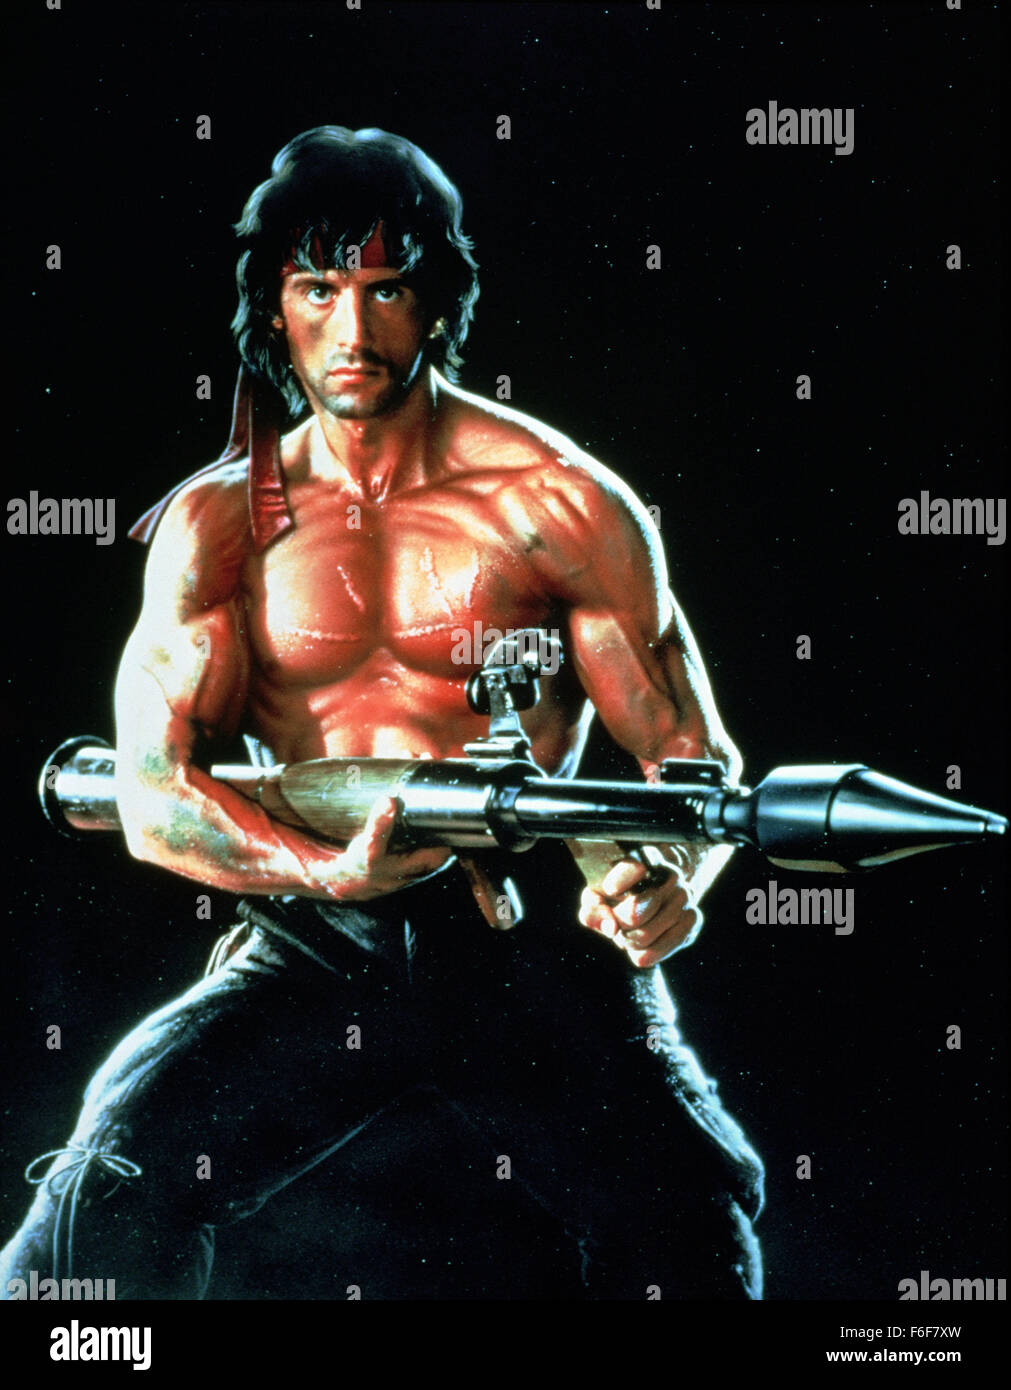 Feb 08, 1982; Hollywood, CA, Stati Uniti d'America; Sylvester Stallone stelle come John J. Rambo in azione avvincente dramma "Rambo: primo sangue" diretto da Ted Kotcheff. Foto Stock